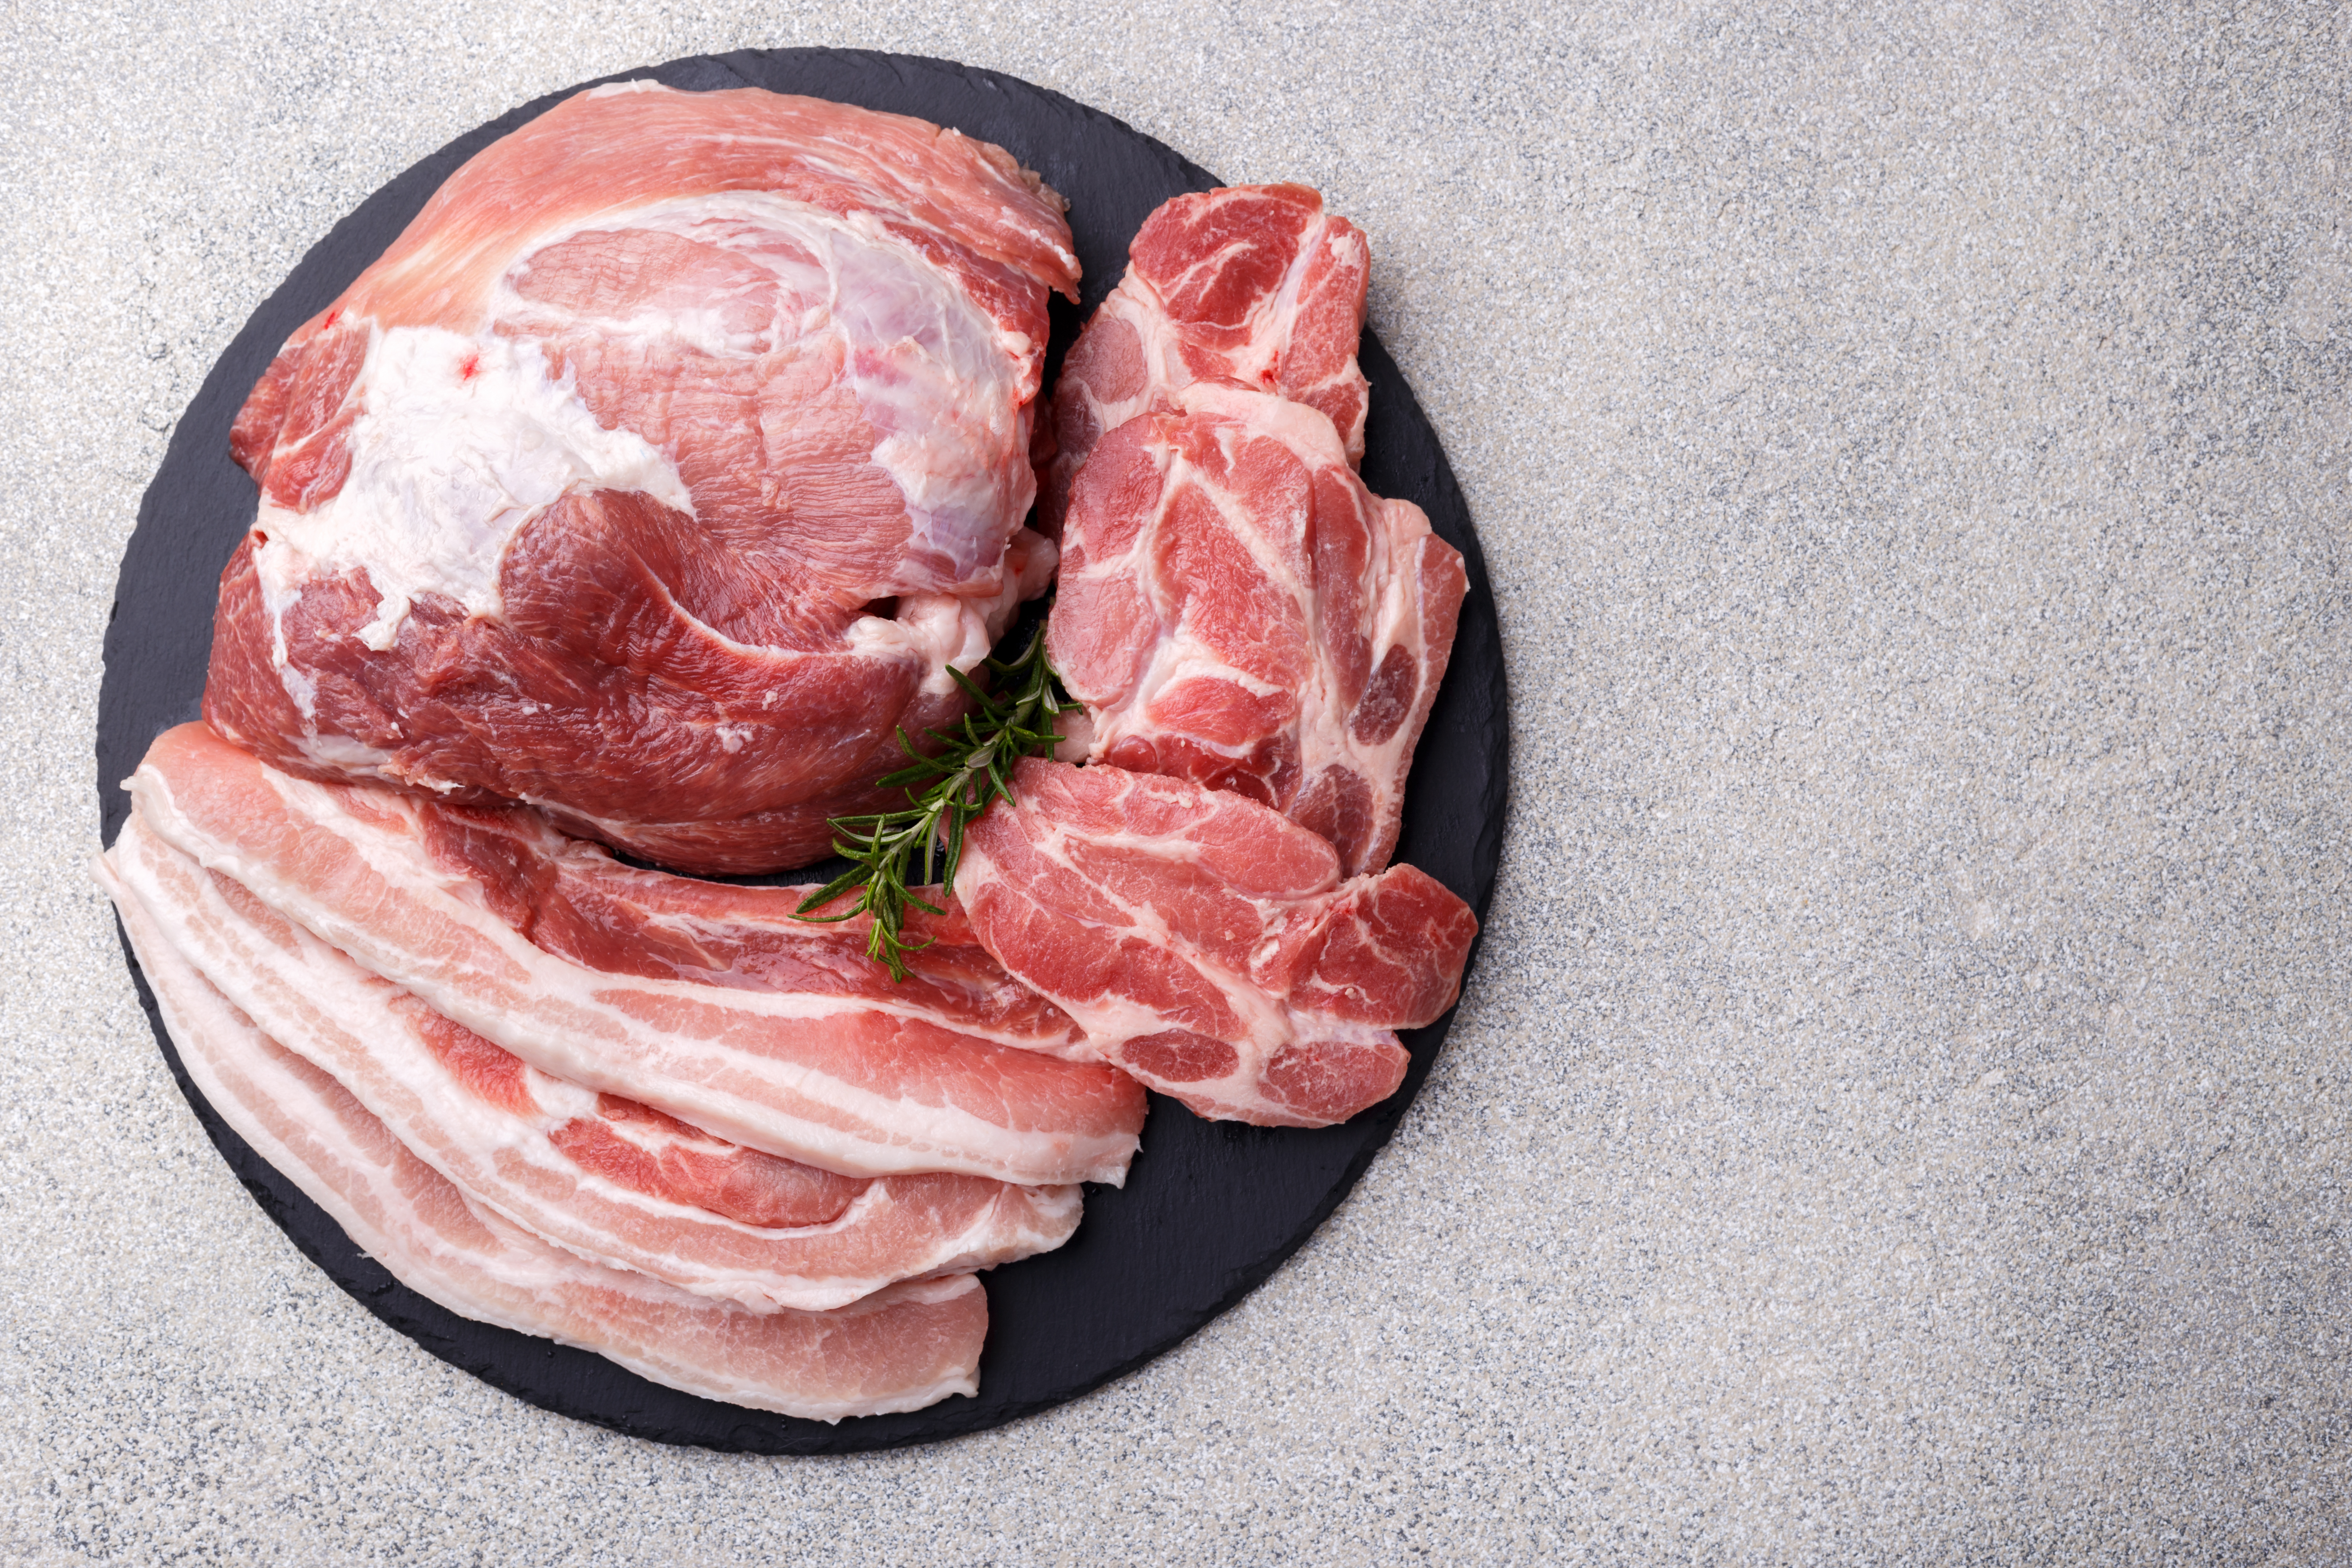 Sertéshús kisokos: minden, amit a hús felhasználásáról tudni érdemes - Blikk